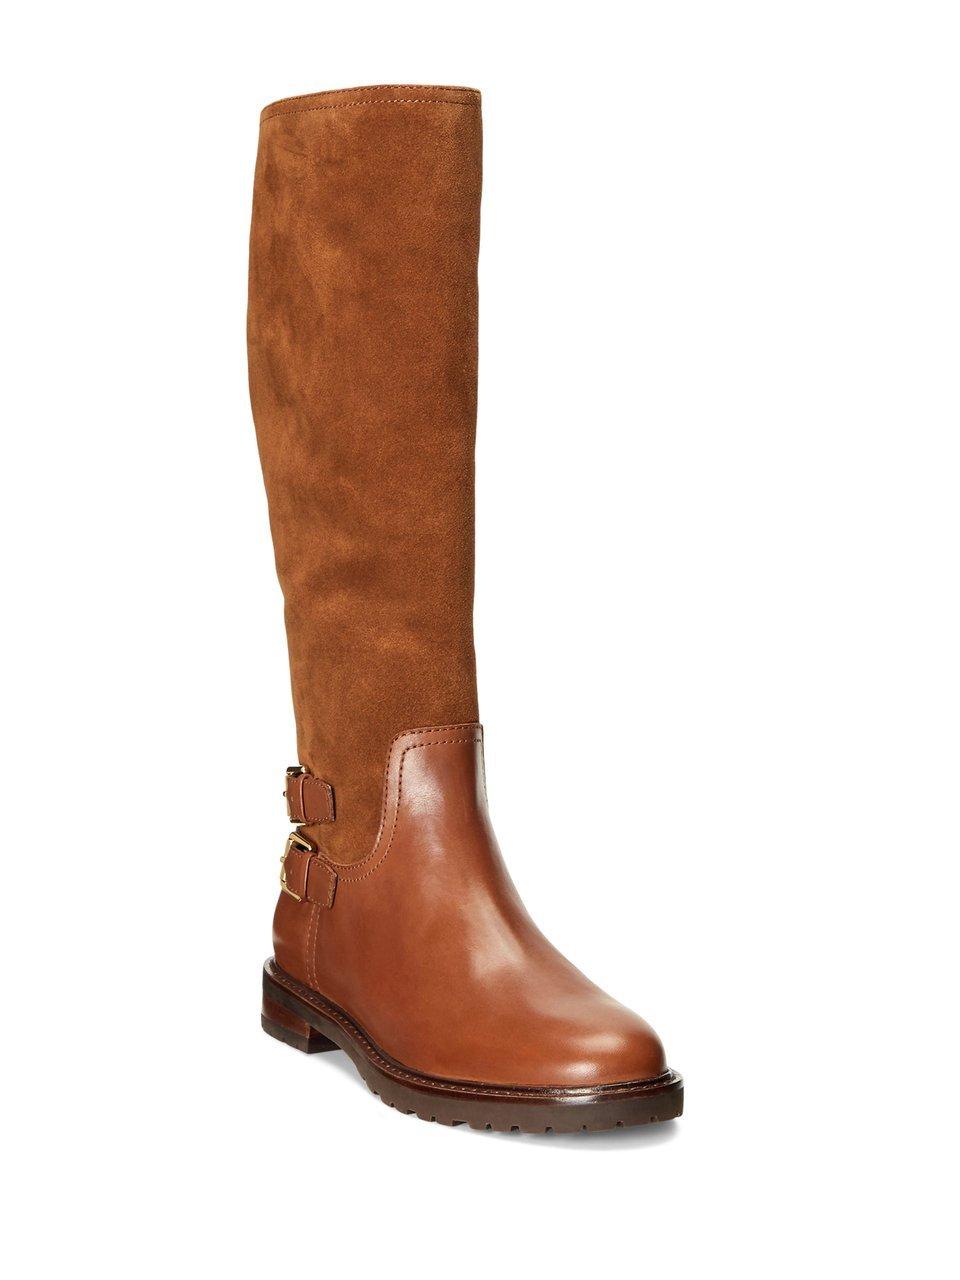 Lauren Ralph Lauren - Boots - brown